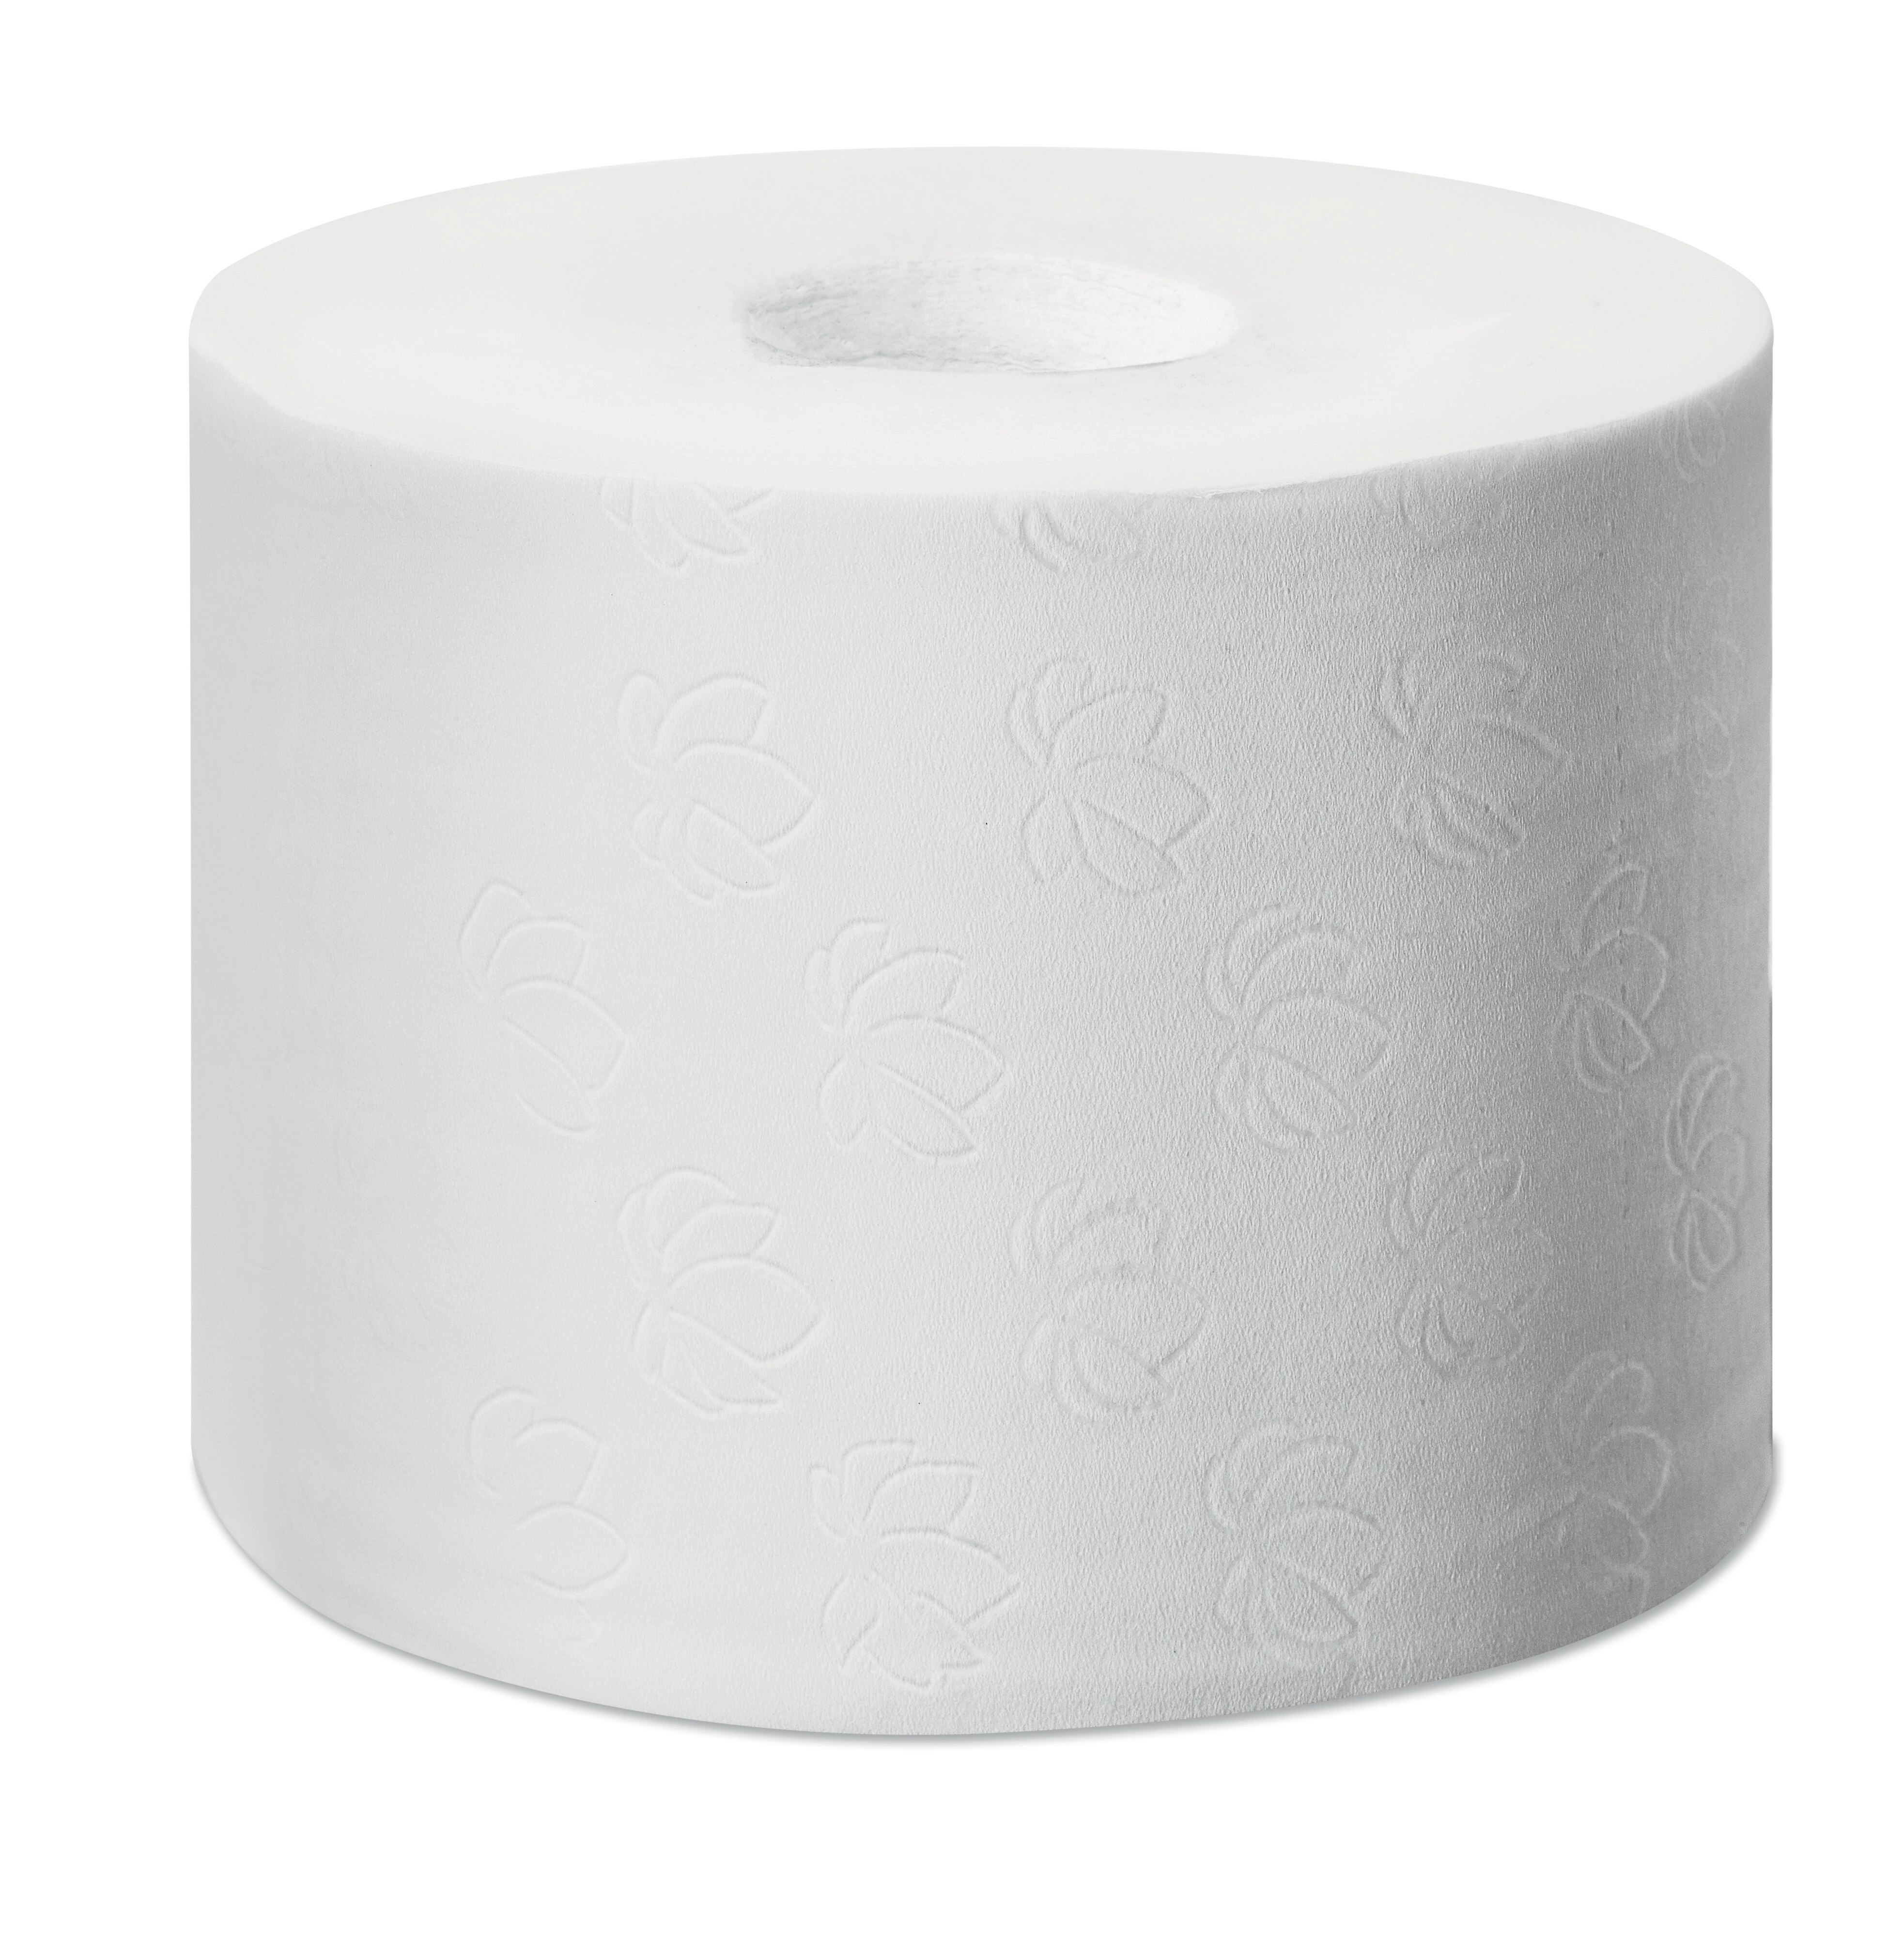 Toiletpapier T7 3-laags Hulsloos